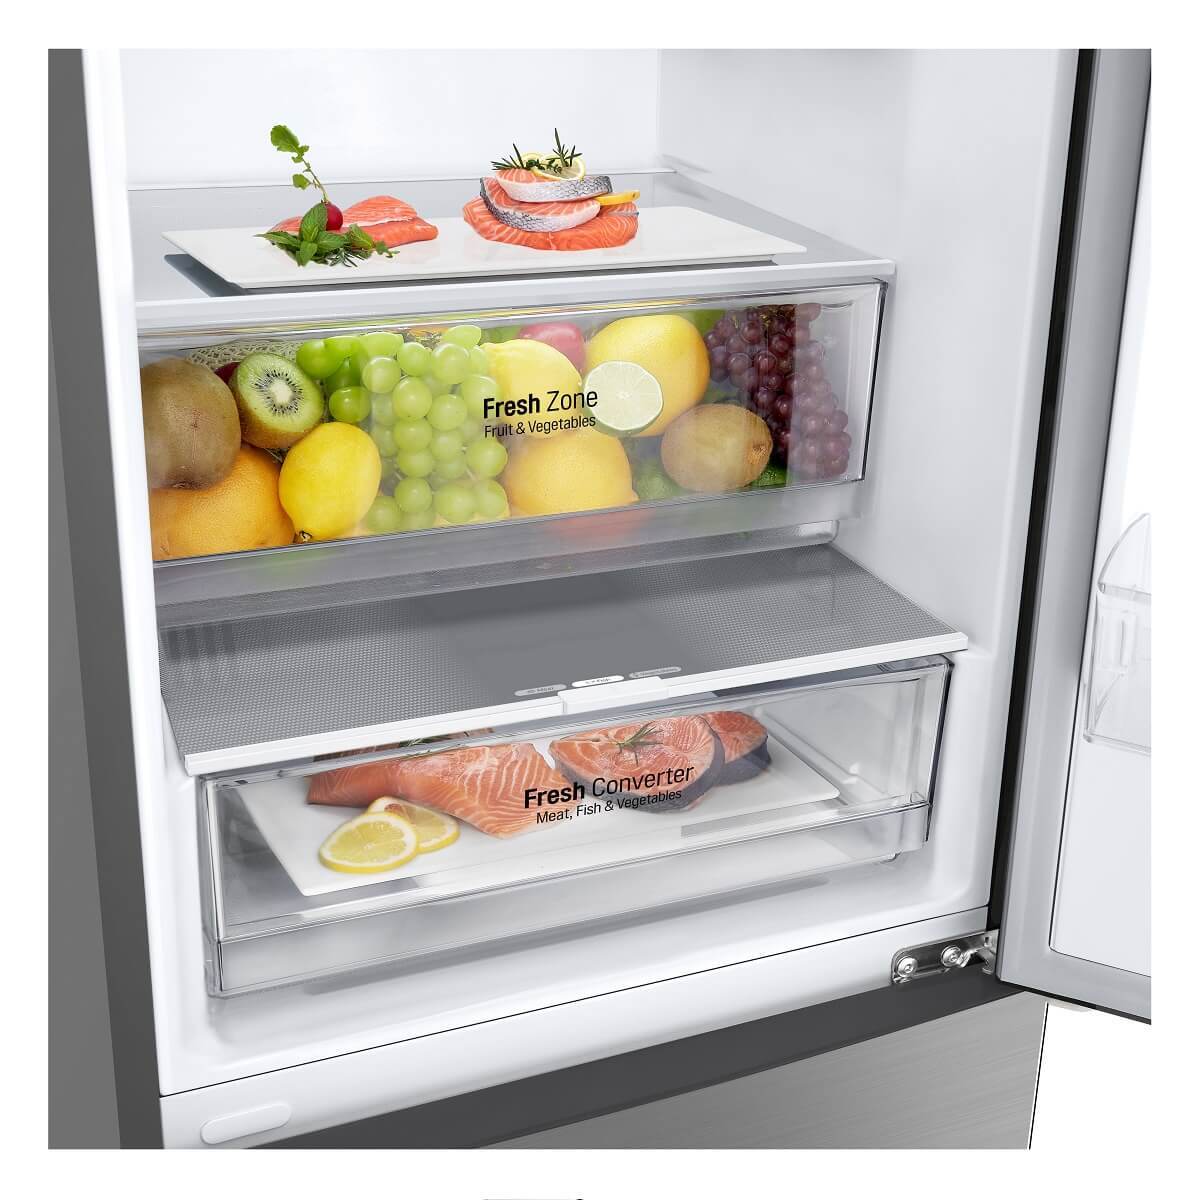 Kombinovaná chladnička s mrazničkou dole LG GBP62PZNAC